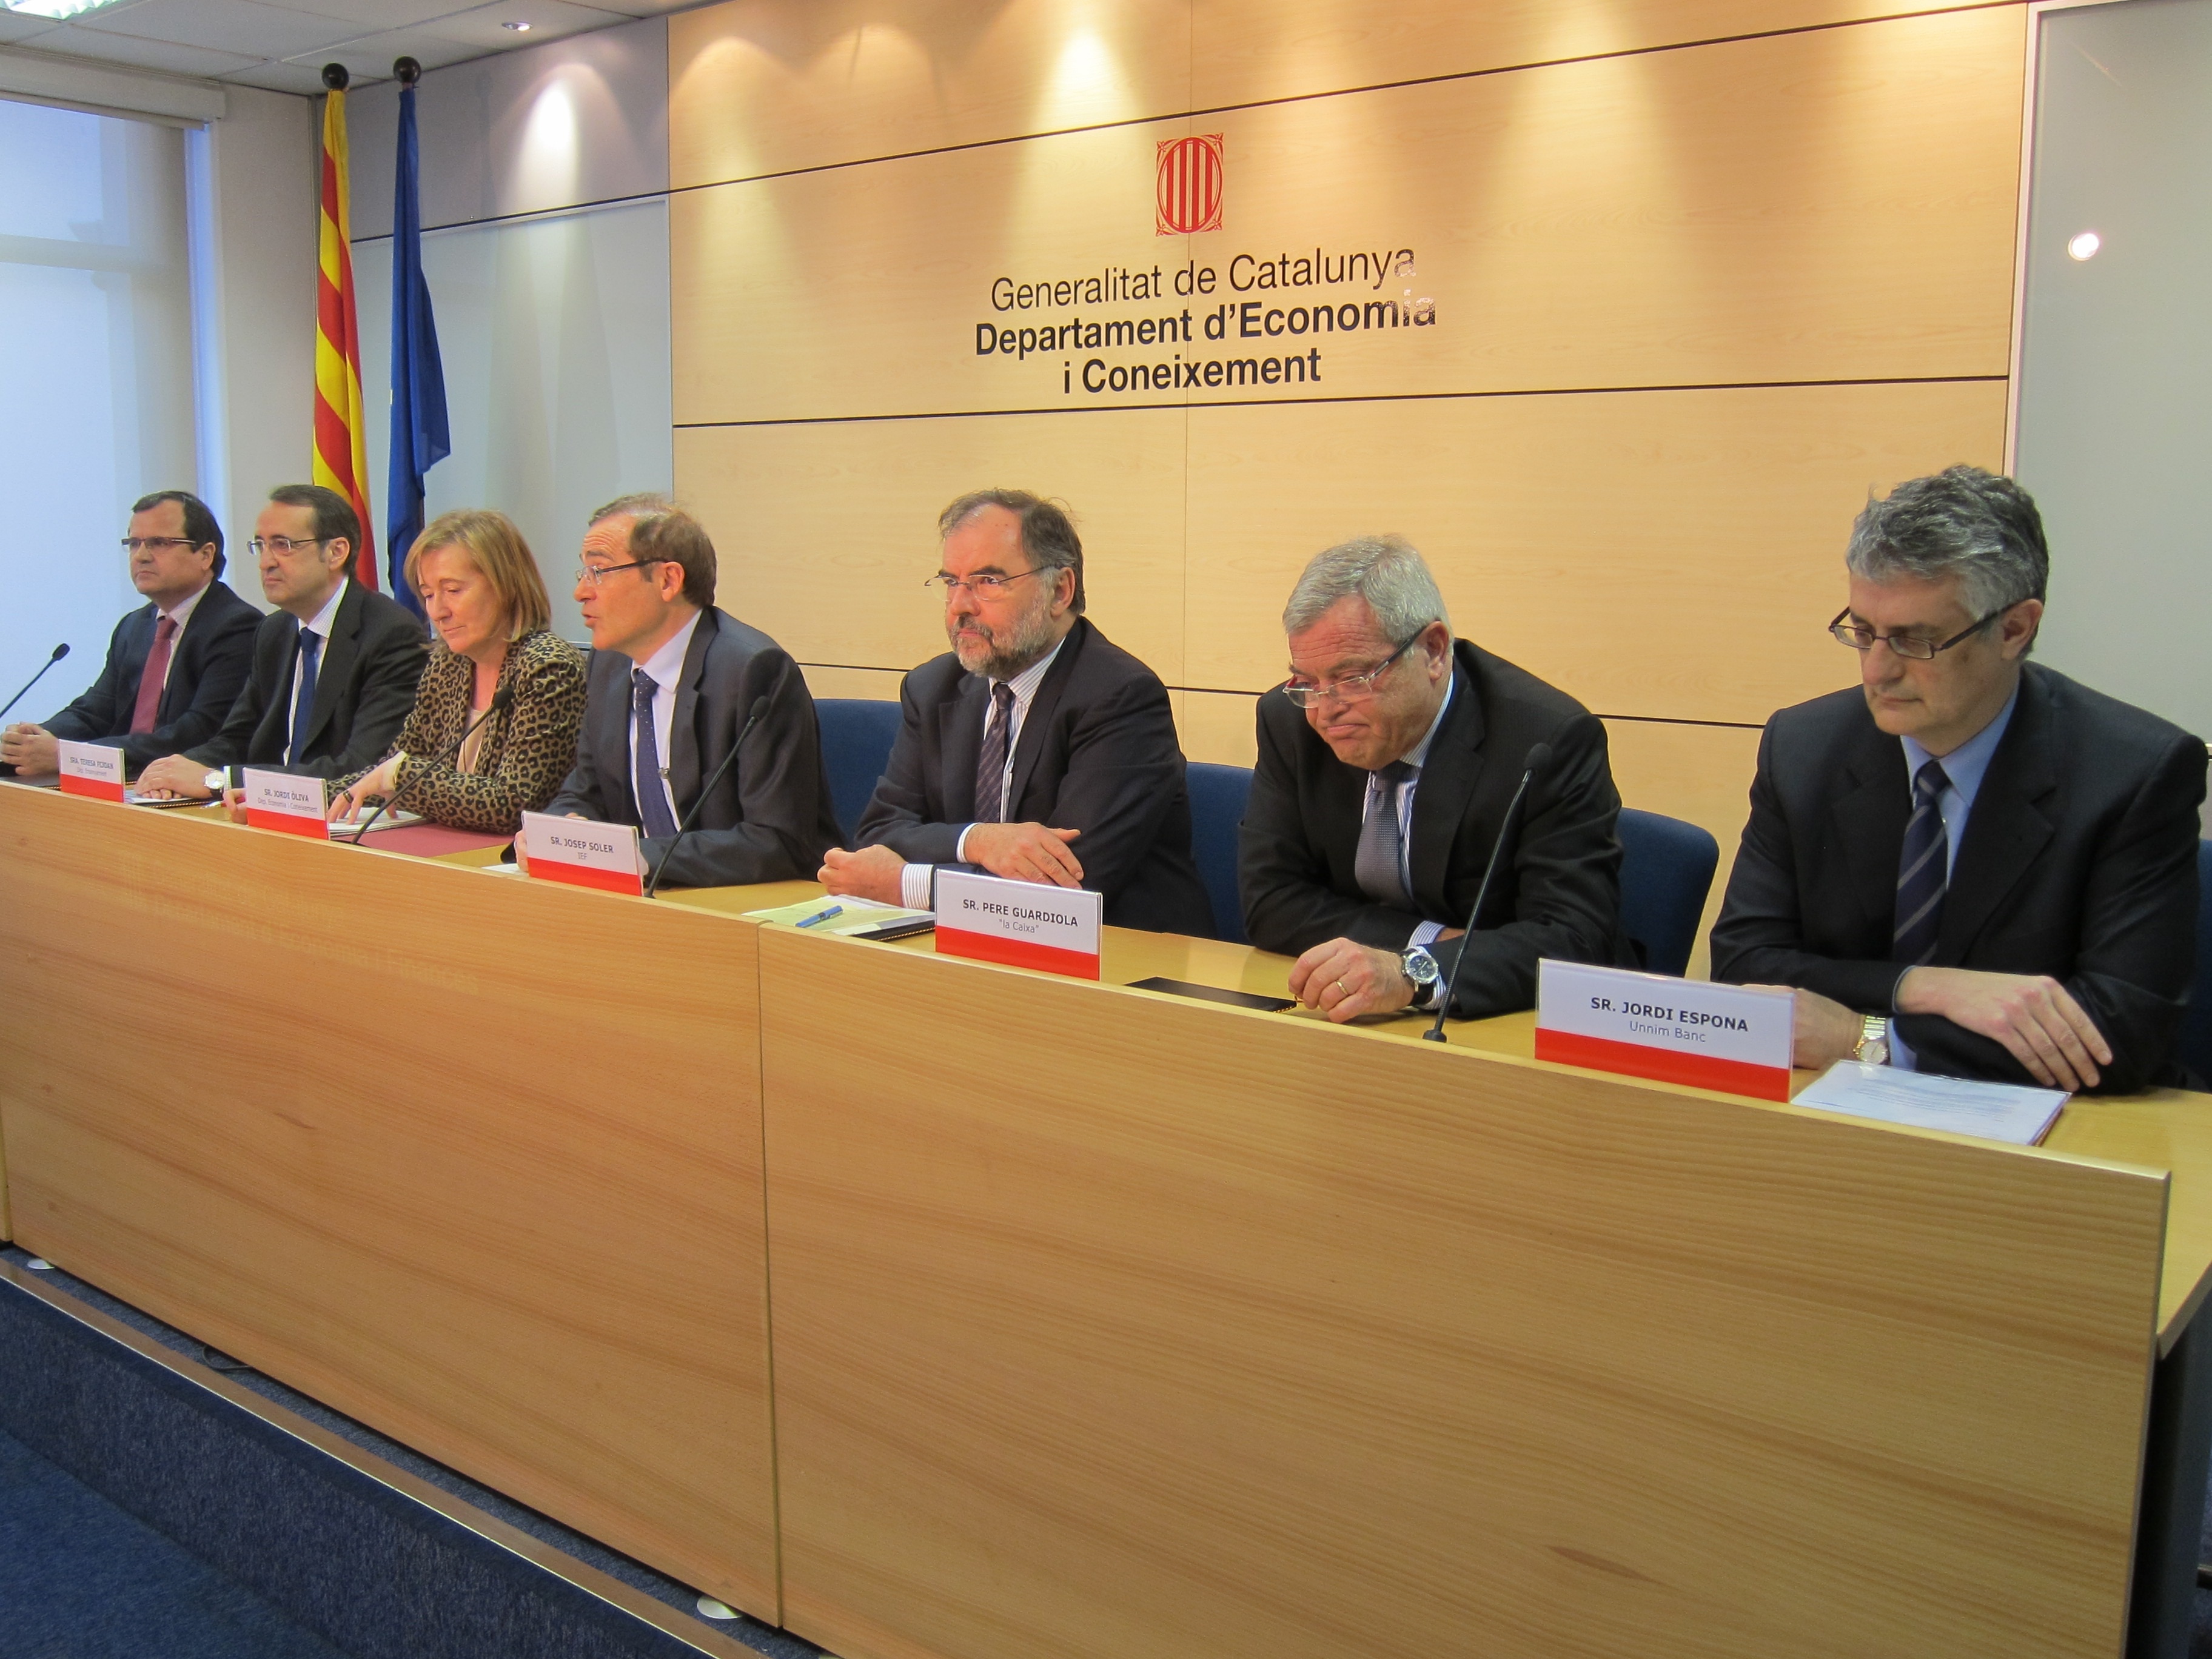 Voluntarios de bancos darán clases de finanzas a 6.500 alumnos de cuarto de ESO en Catalunya